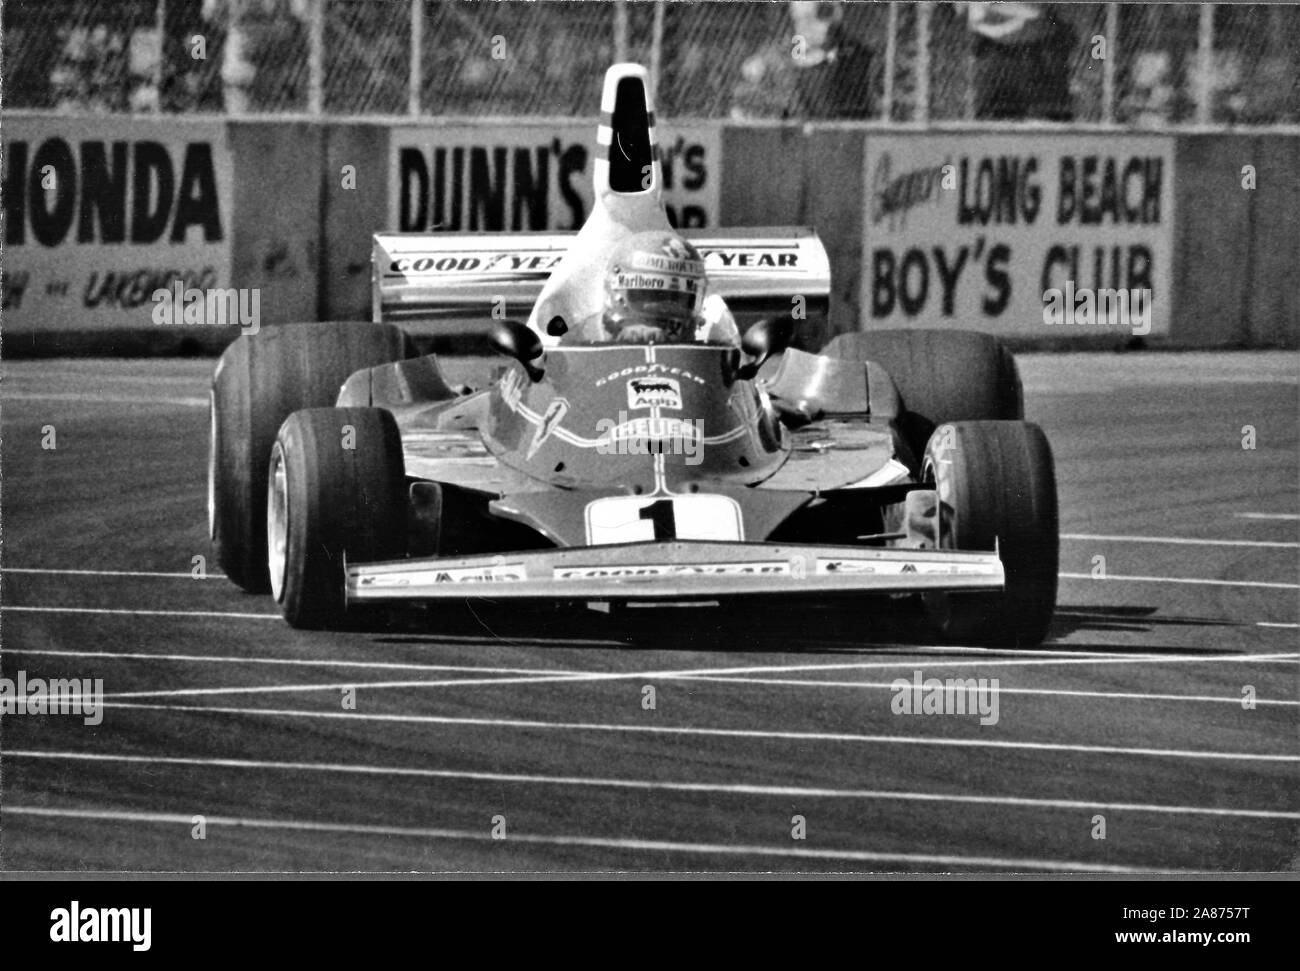 Niki Lauda dans sa Ferrari 312T2 au Long Beach Grand Prix - Le Grand Prix des Etats-Unis de 1977. Andreas Nikolaus Lauda est un pilote de Formule 1, trois fois F1 World Champion des conducteurs, remportant en 1975, 1977 et 1984, l'aviation et un entrepreneur. Il est le seul pilote de l'histoire de la F1 à avoir été champion pour les deux Ferrari et McLaren, le sport les deux constructeurs plus de succès. 22 février 1949 - 20 mai 2019) est un pilote de Formule 1, trois fois F1 World Champion des conducteurs, remportant en 1975, 1977 et 1984, l'aviation et un entrepreneur. Il est le seul pilote en F1 hi Banque D'Images